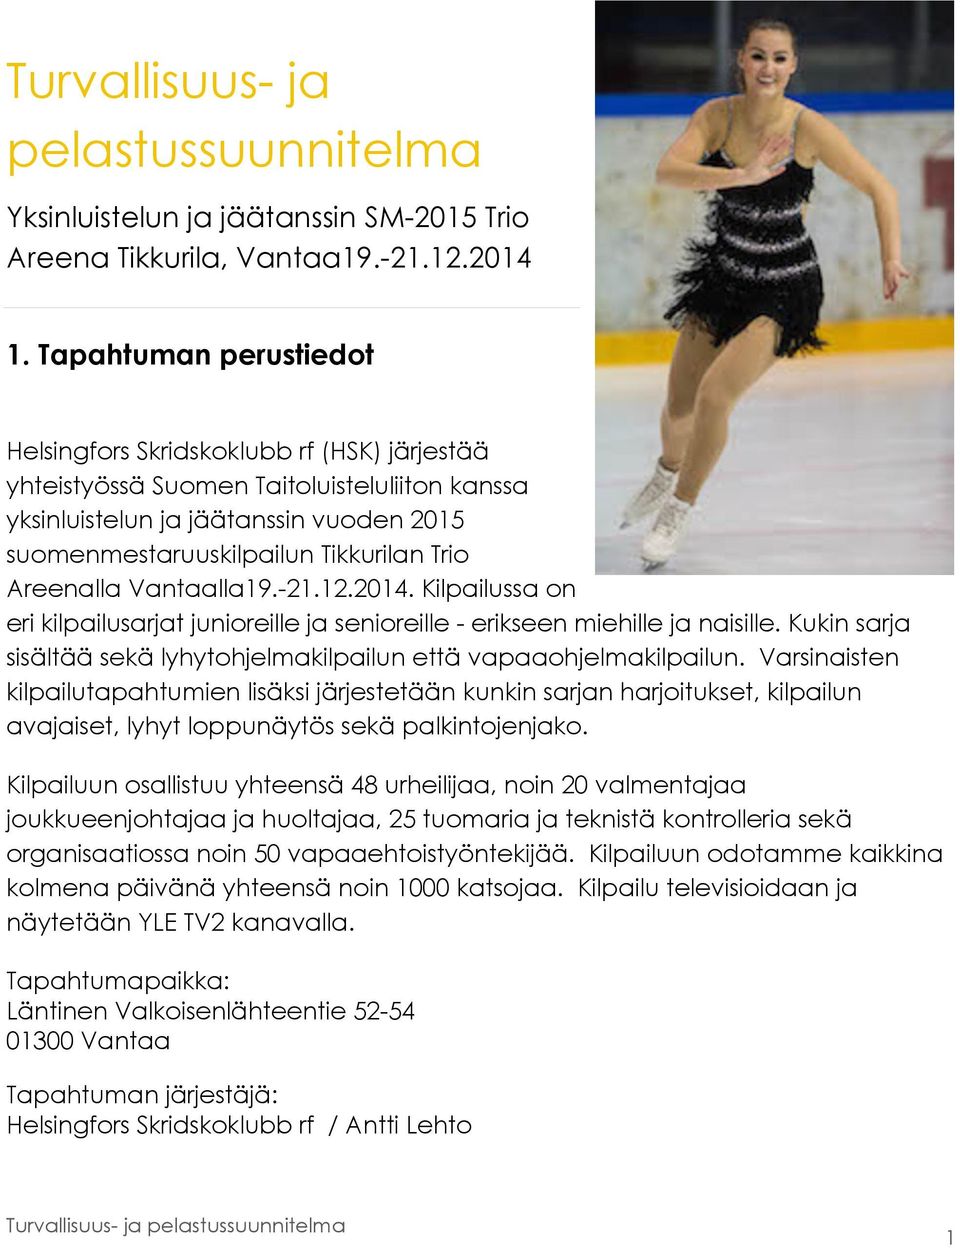 Areenalla Vantaalla19.-21.12.2014. Kilpailussa on eri kilpailusarjat junioreille ja senioreille - erikseen miehille ja naisille.